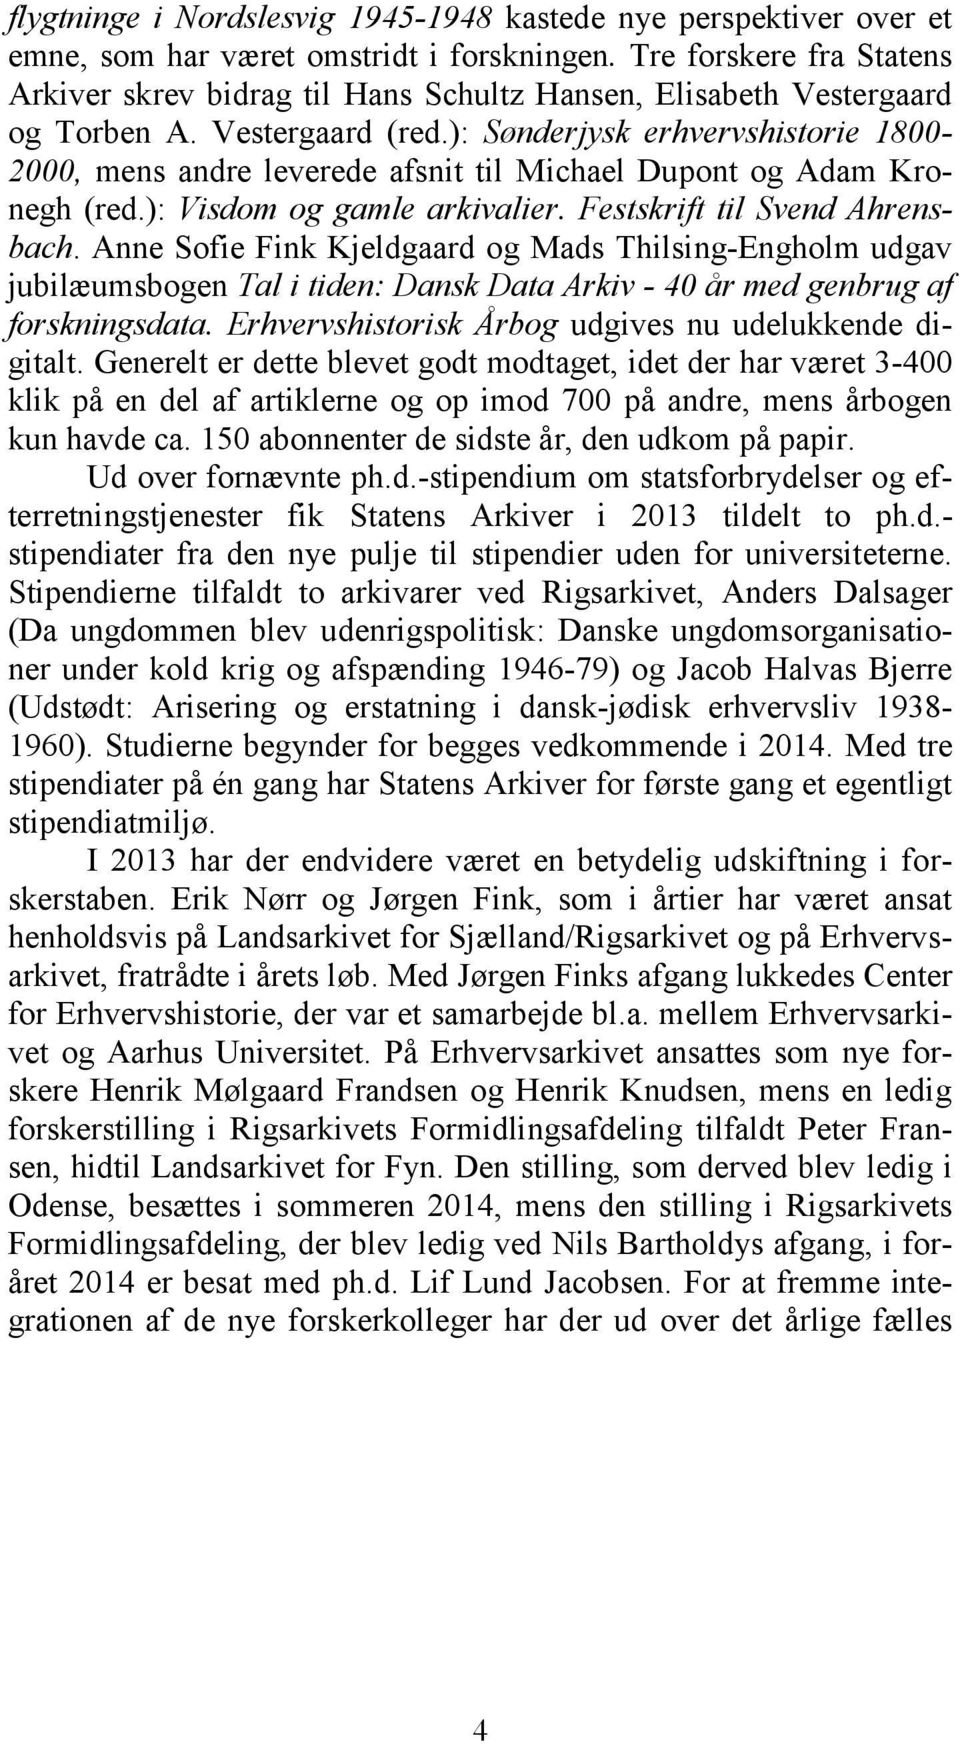 ): Sønderjysk erhvervshistorie 1800-2000, mens andre leverede afsnit til Michael Dupont og Adam Kronegh (red.): Visdom og gamle arkivalier. Festskrift til Svend Ahrensbach.